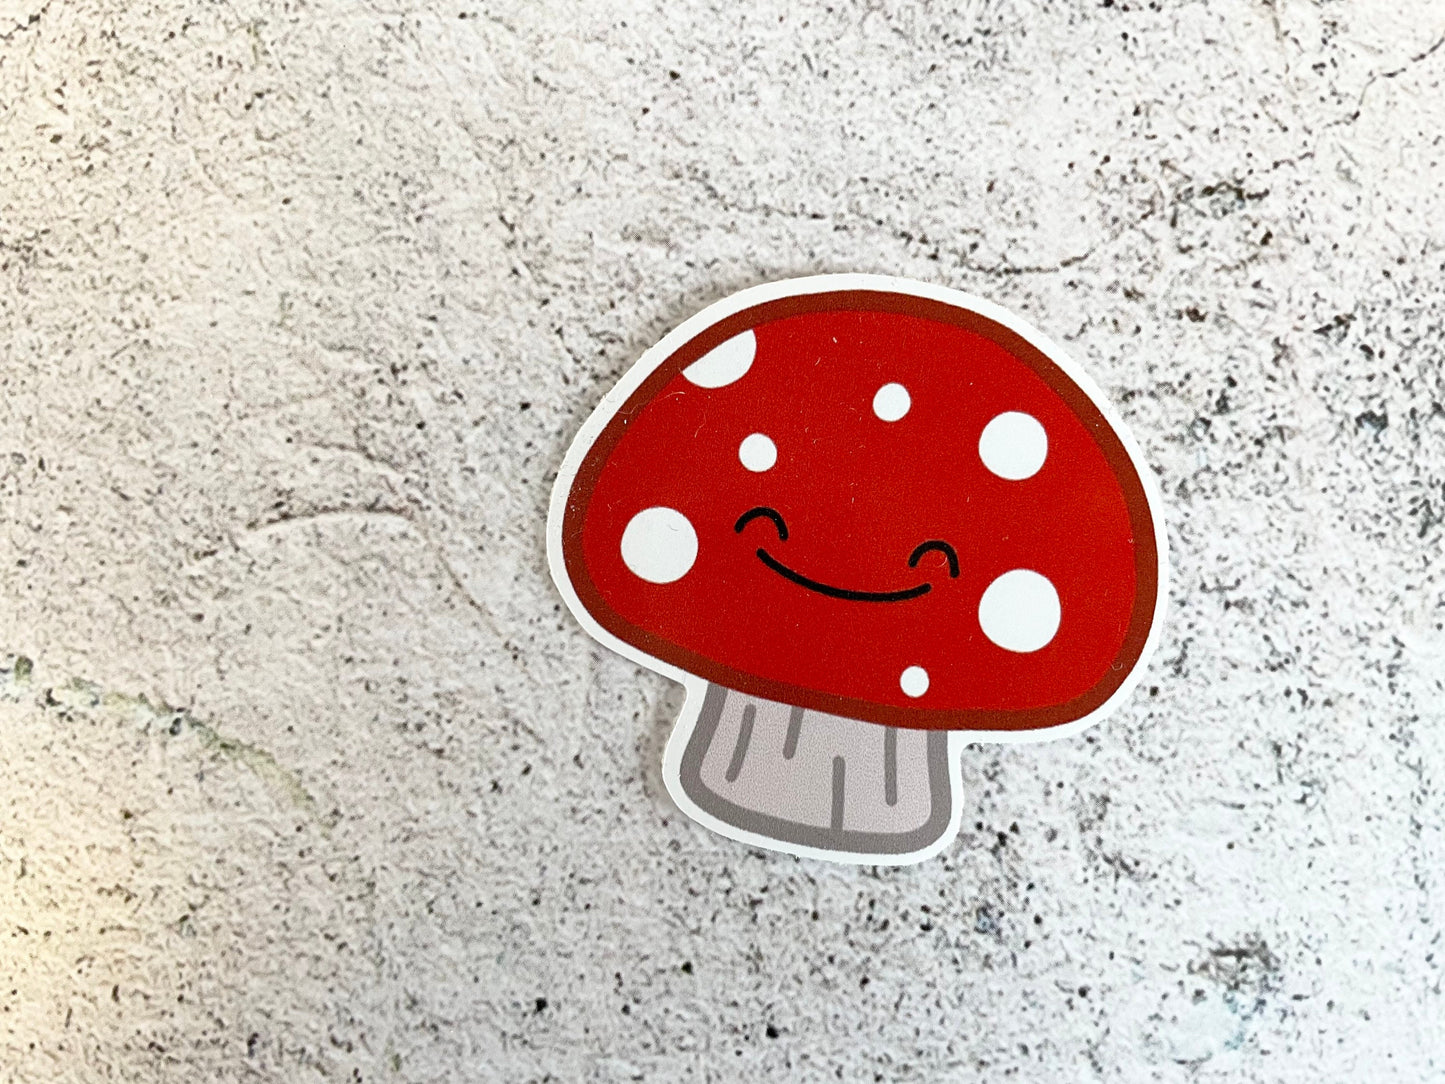 A cute 5cm sticker of a red mushroom